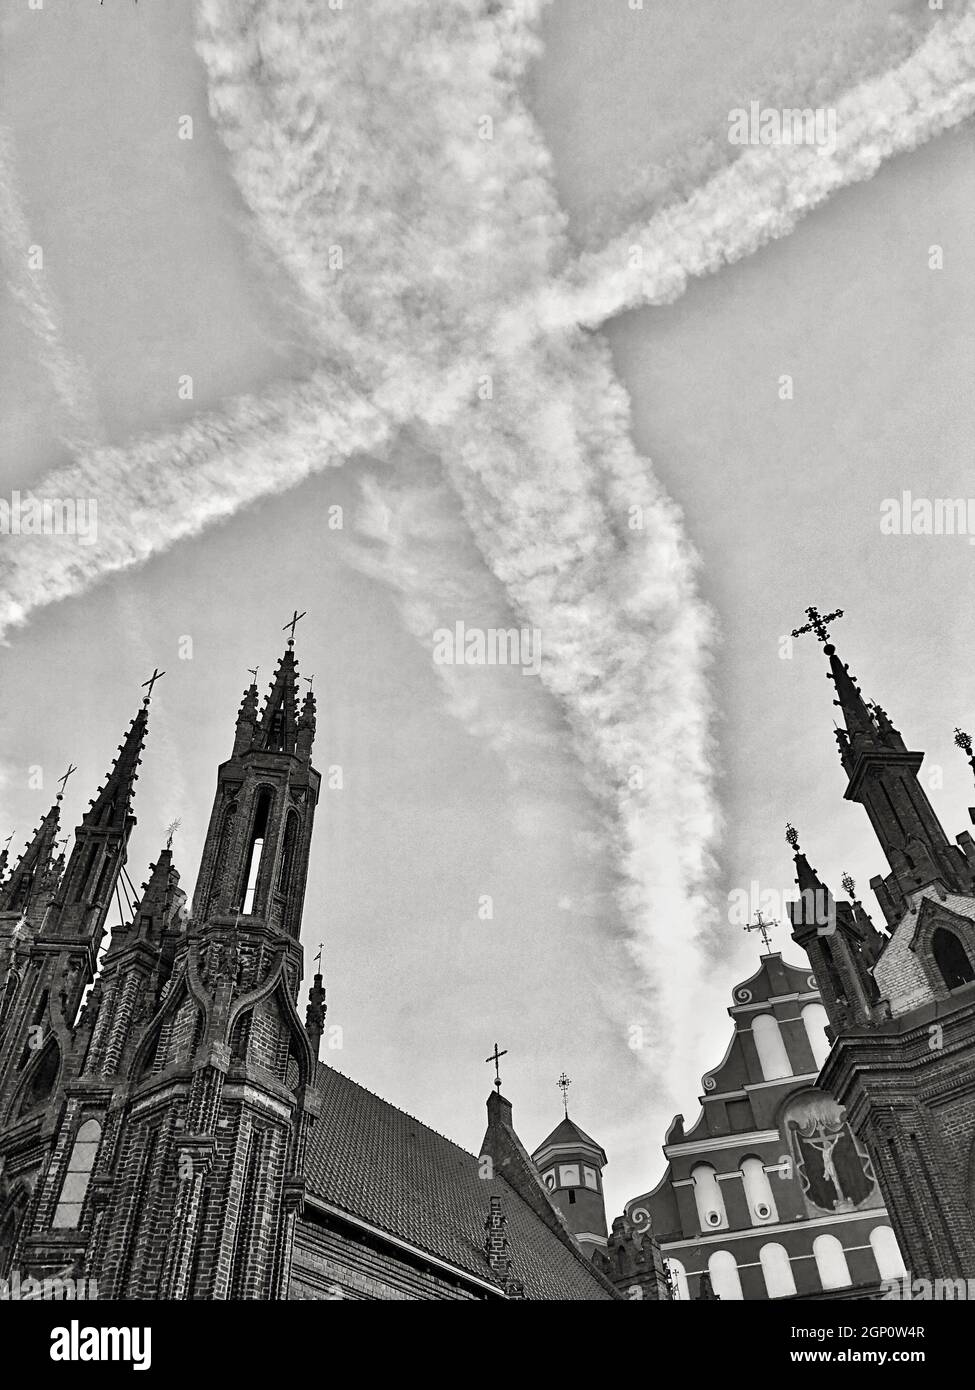 L'église croise les lignes de plan correspondantes dans le ciel en tant que croix Banque D'Images